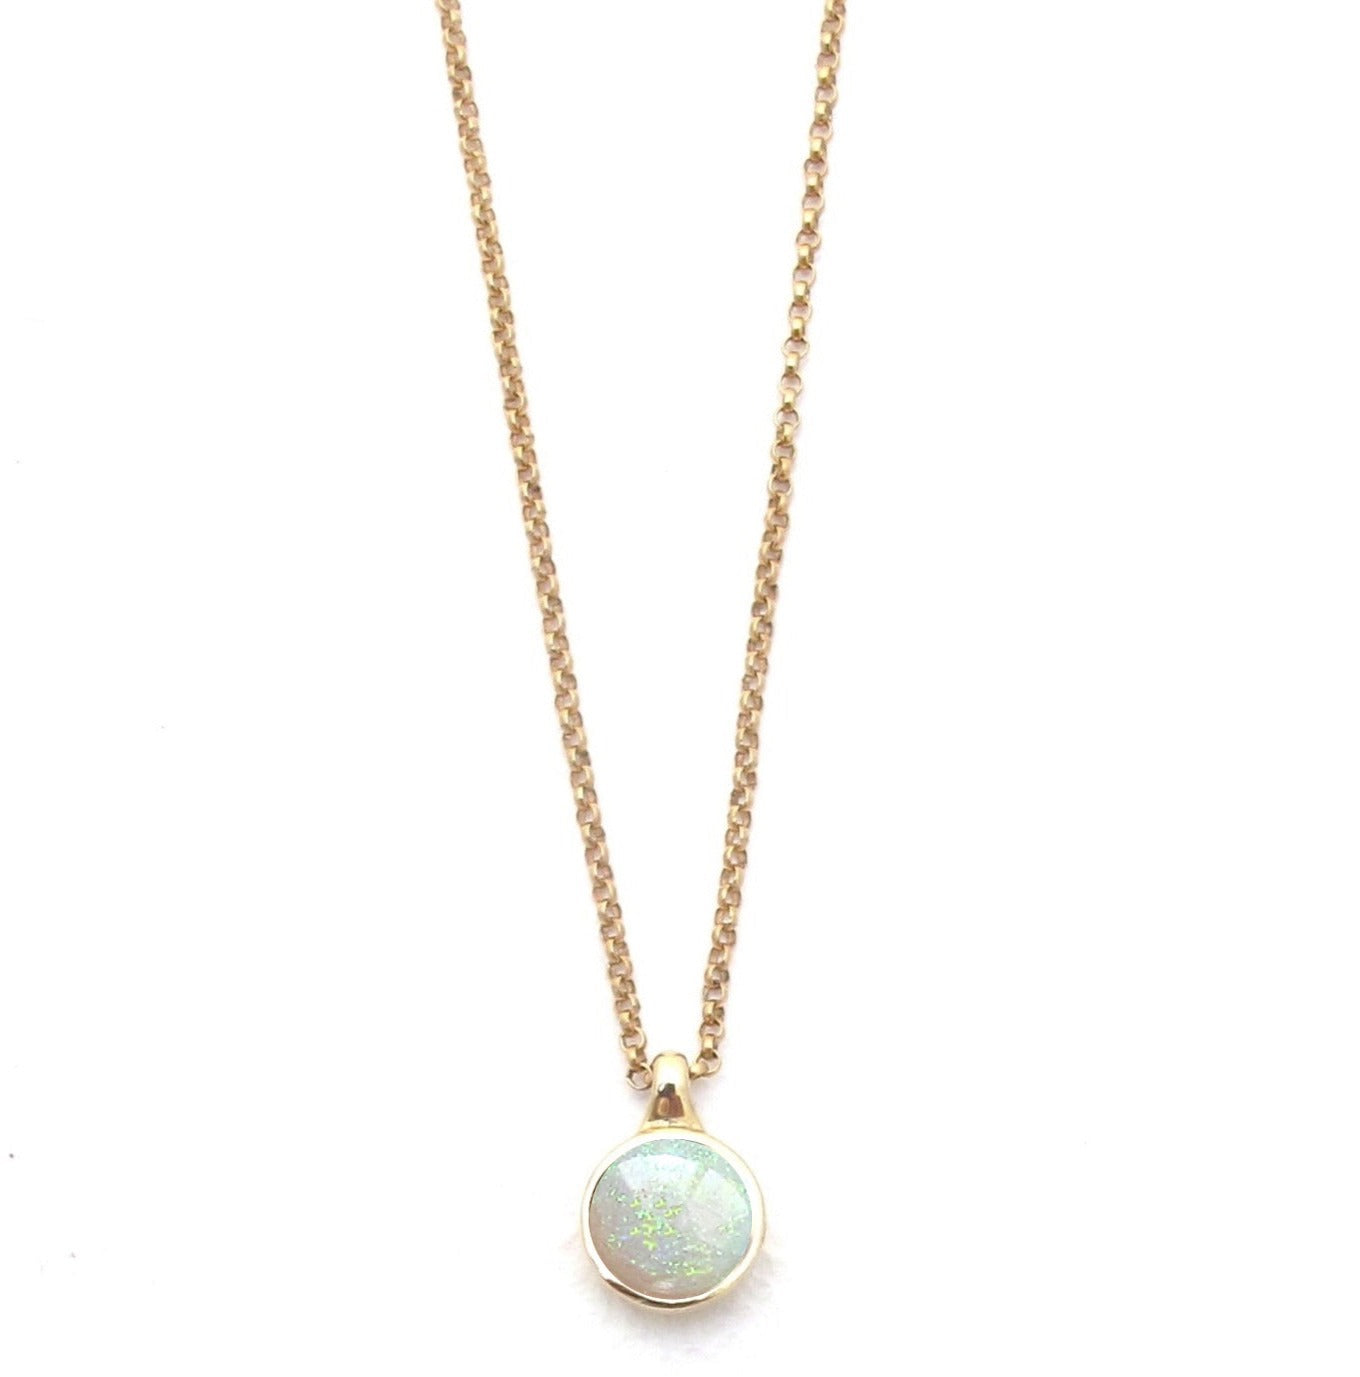 Vine opal pendant necklace